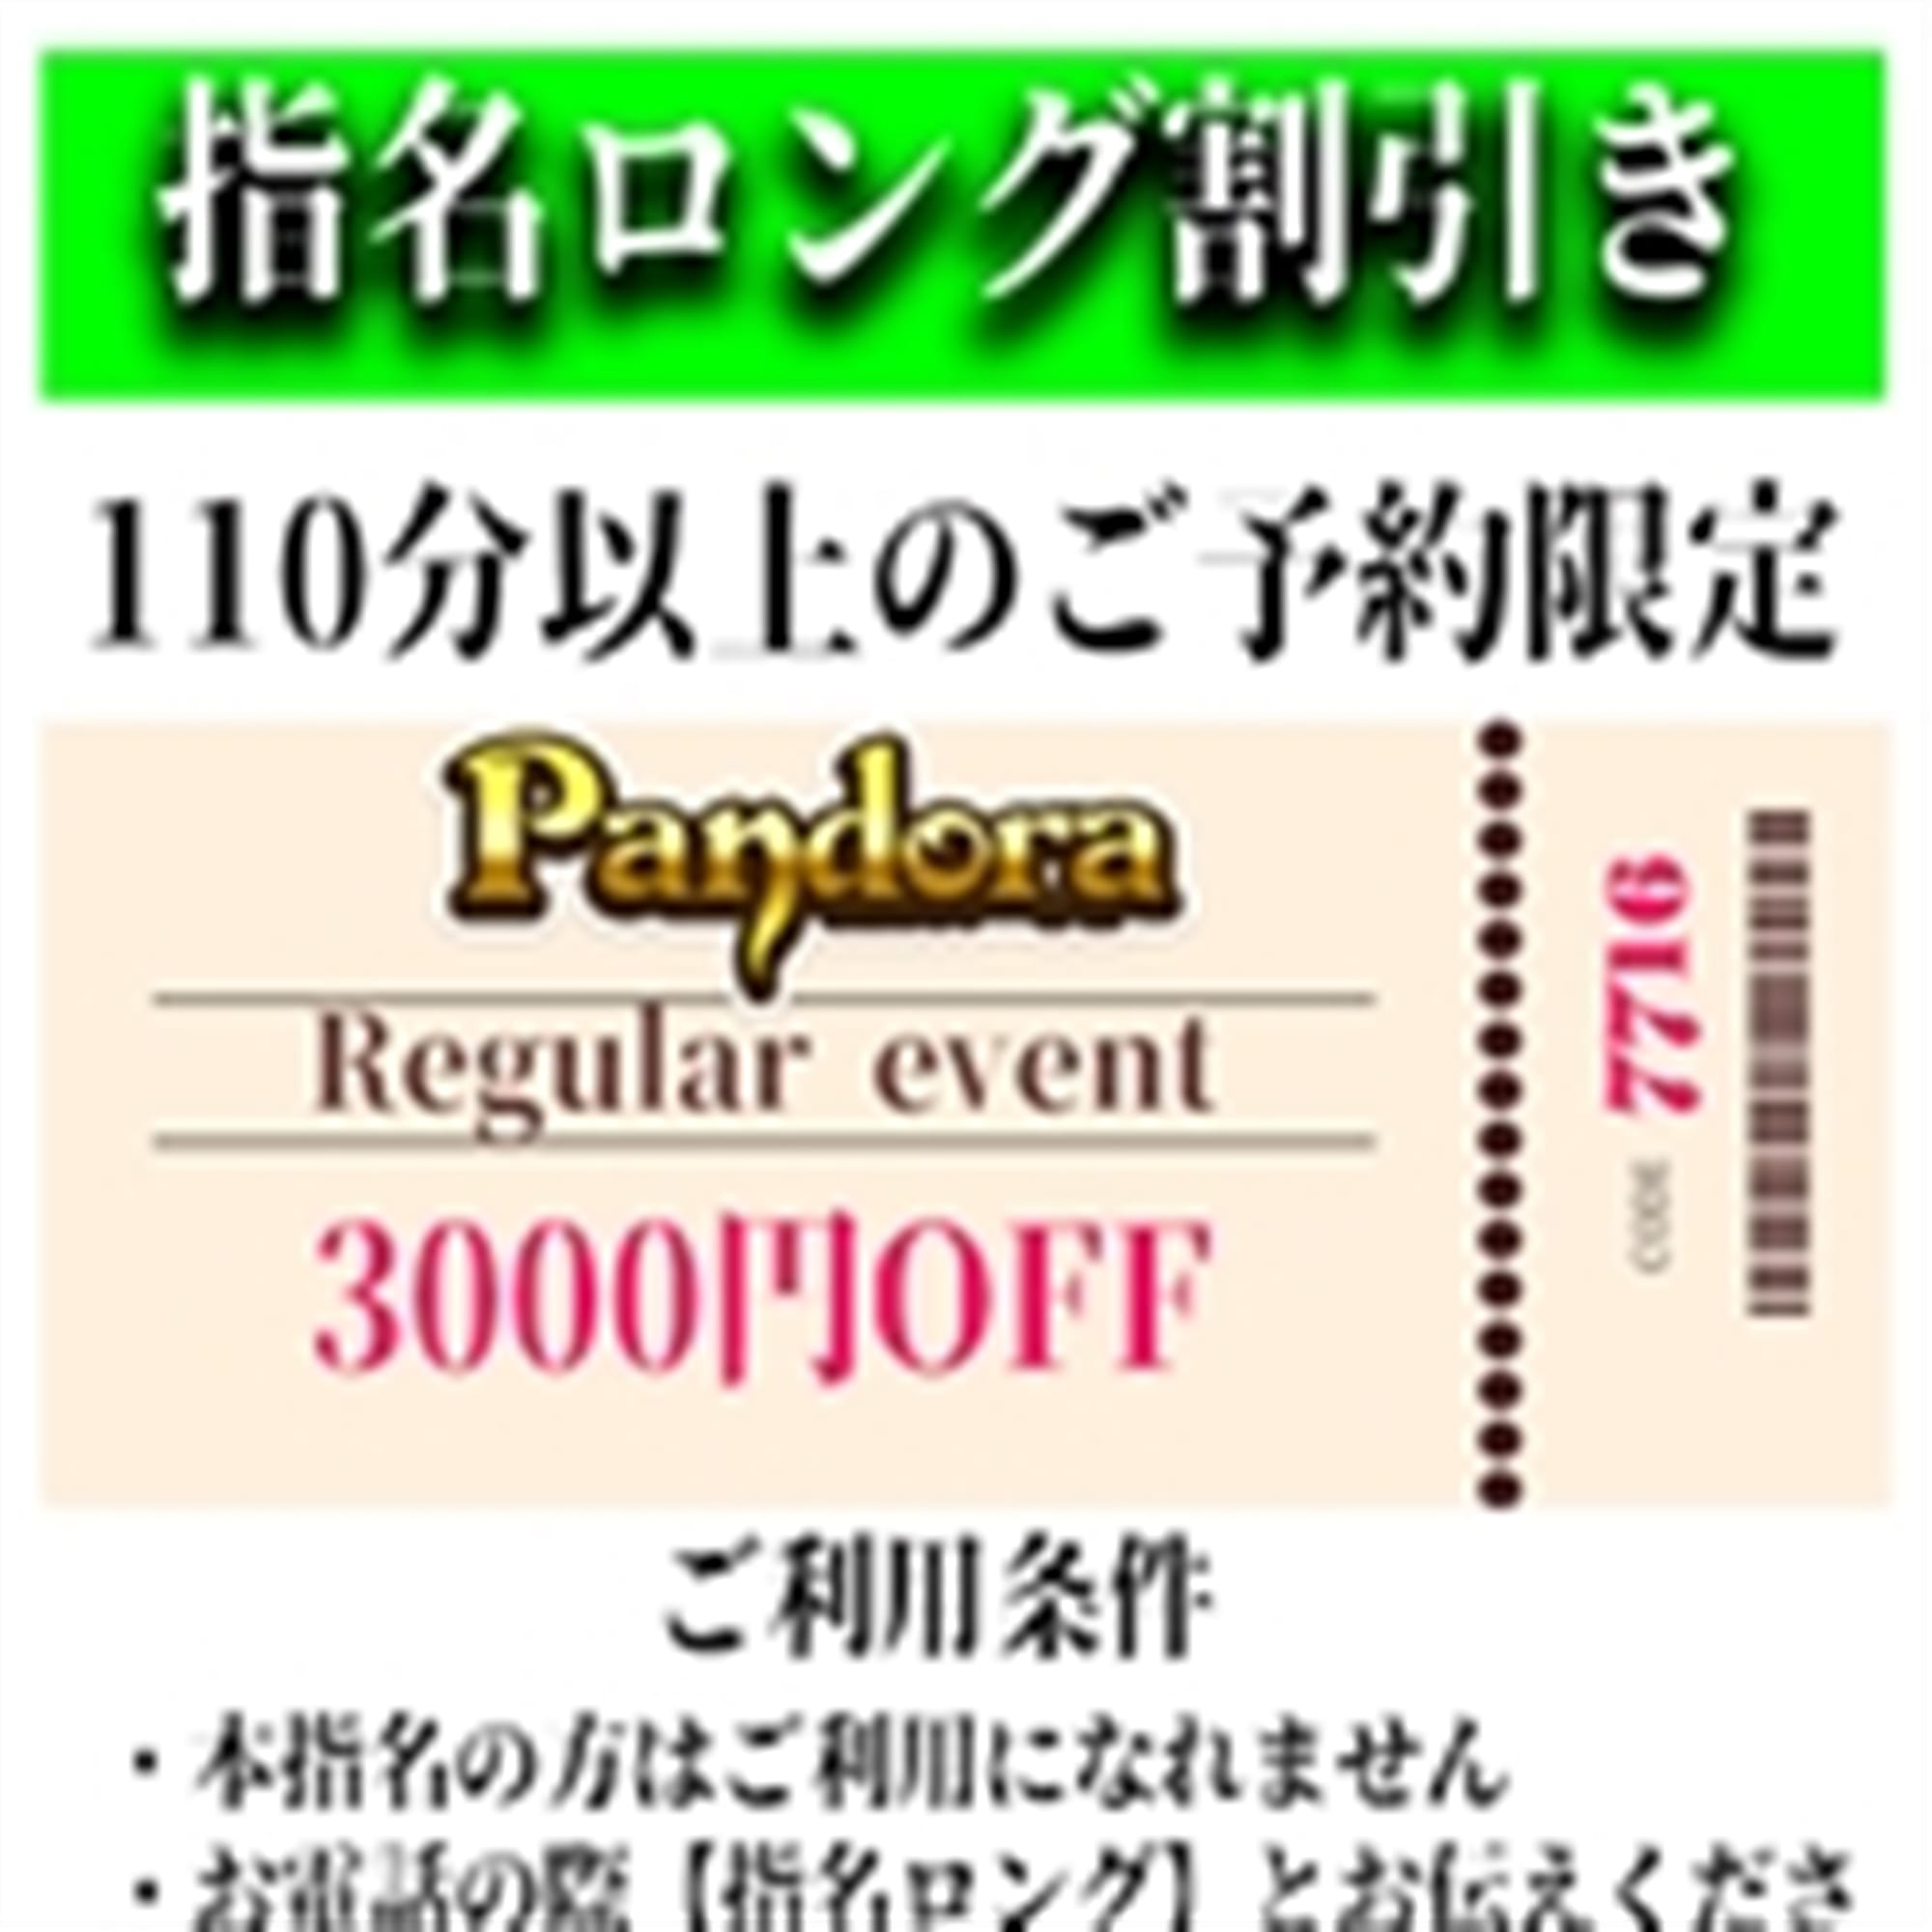 「ご指名のお客様も遊べるロングコース割引」04/27(土) 13:19 | Pandora(パンドラ)新潟のお得なニュース